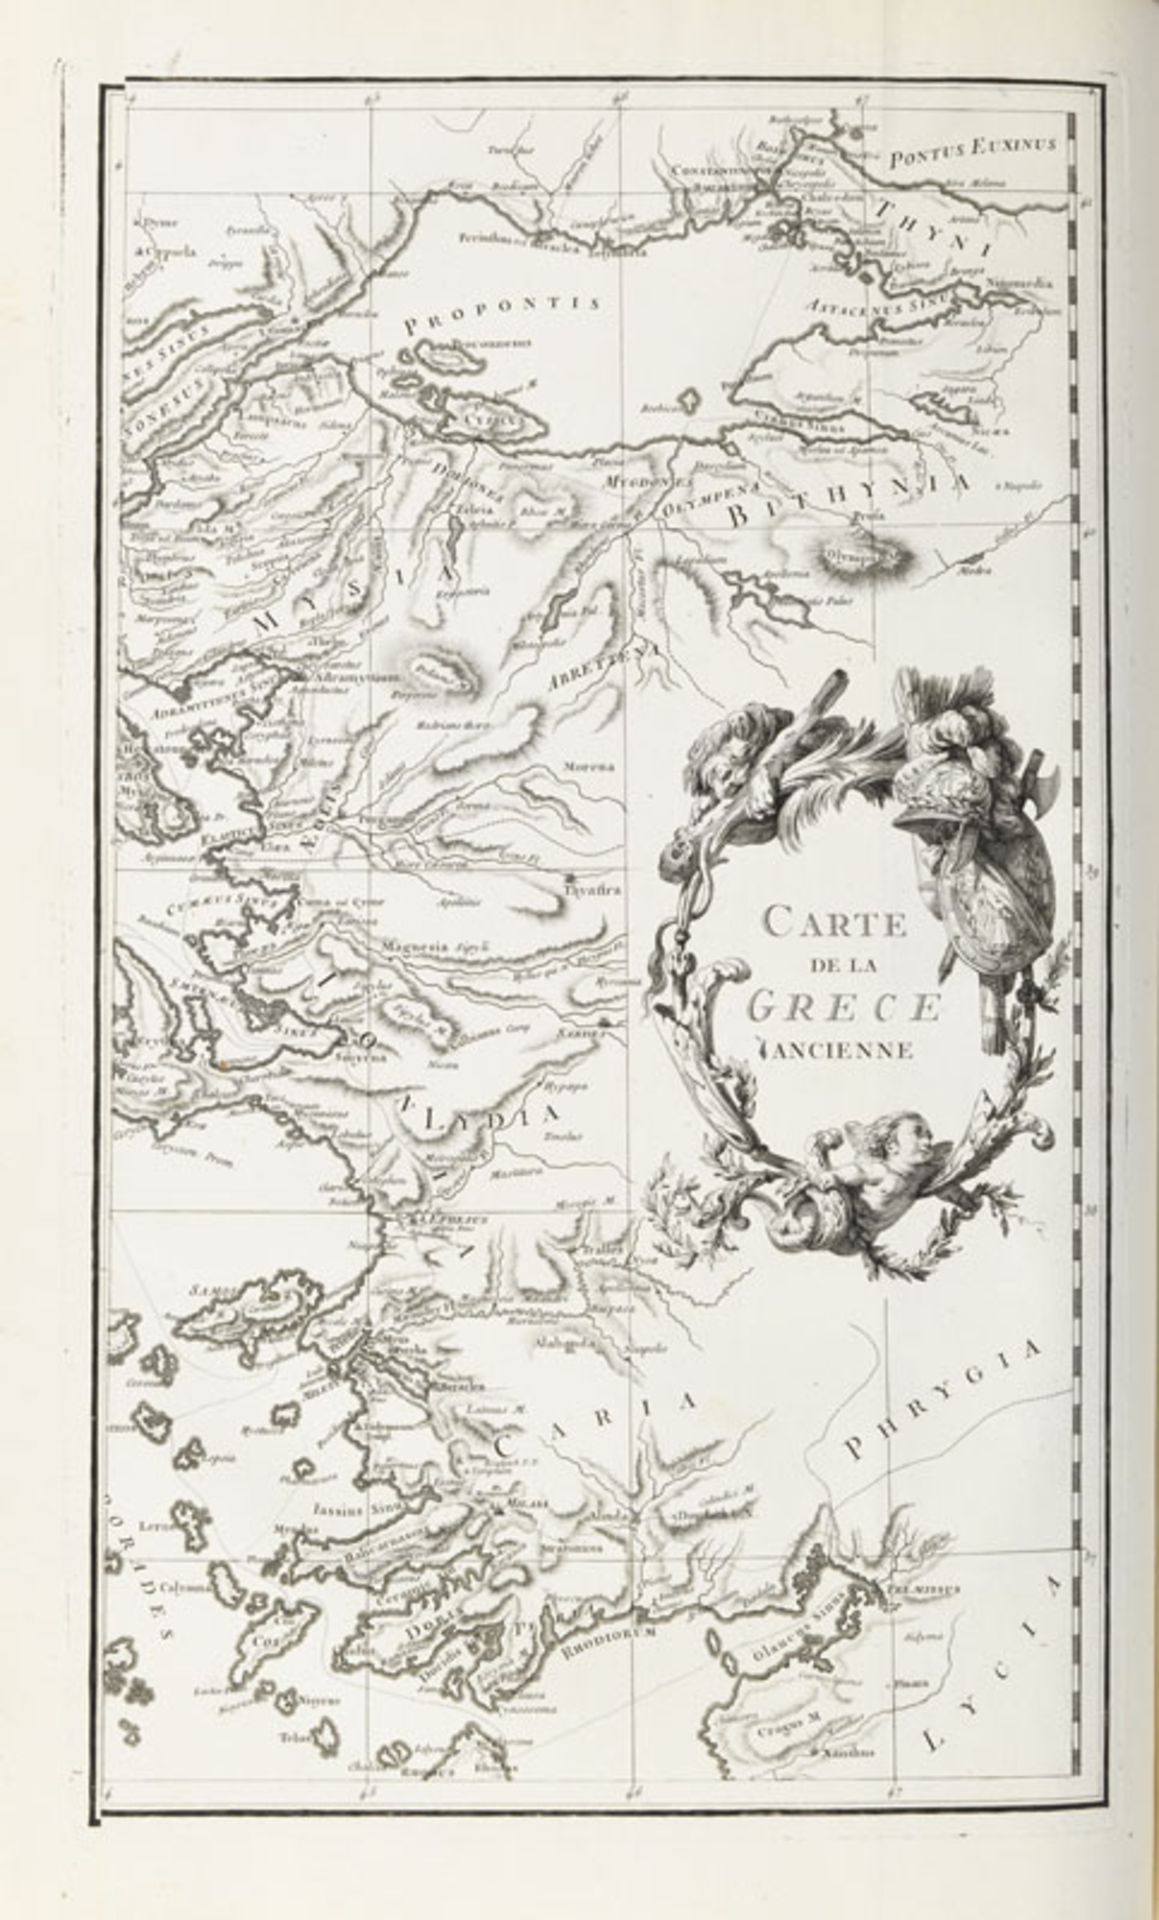 VOYAGE CHOISEUL-GOUFFIER. Voyage pittoresque de la Grèce. Paris, J. J. Blaise, 1782. 2 vol. in-folio - Image 3 of 7